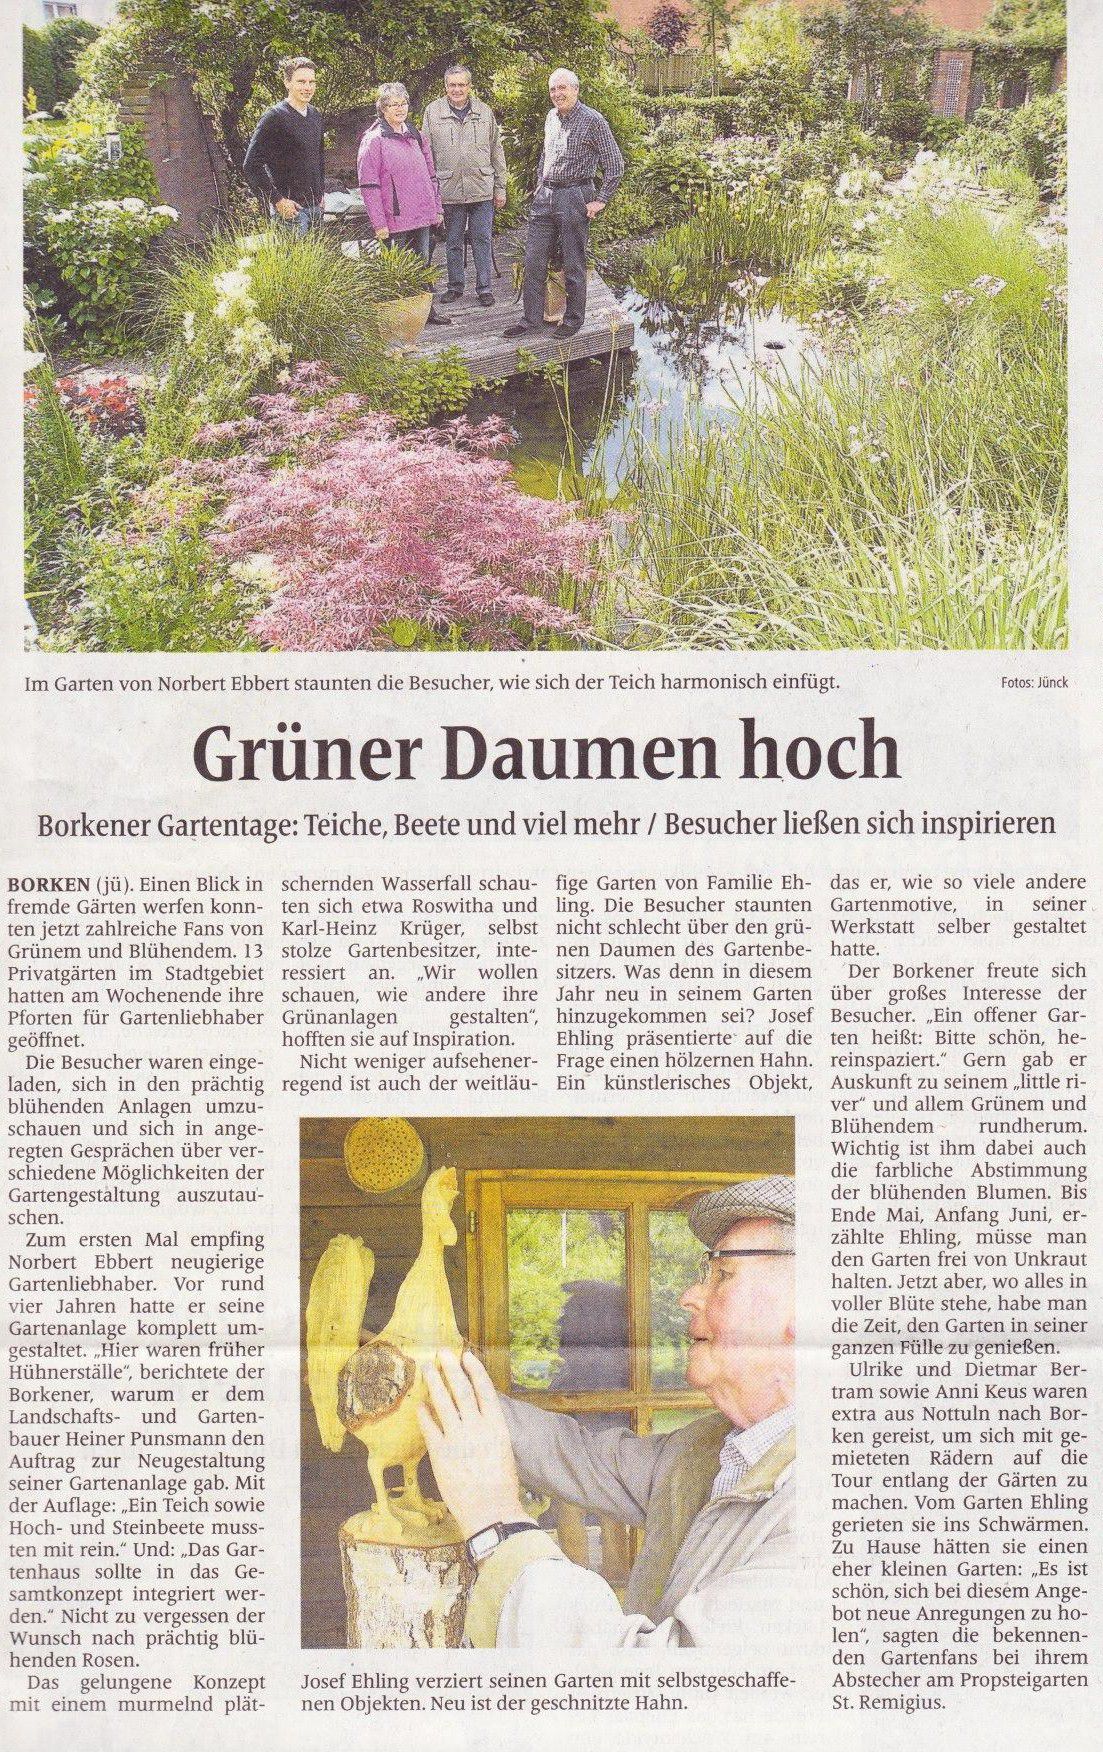 Bericht der Borkener Zeitung "Grüner Daumen hoch"